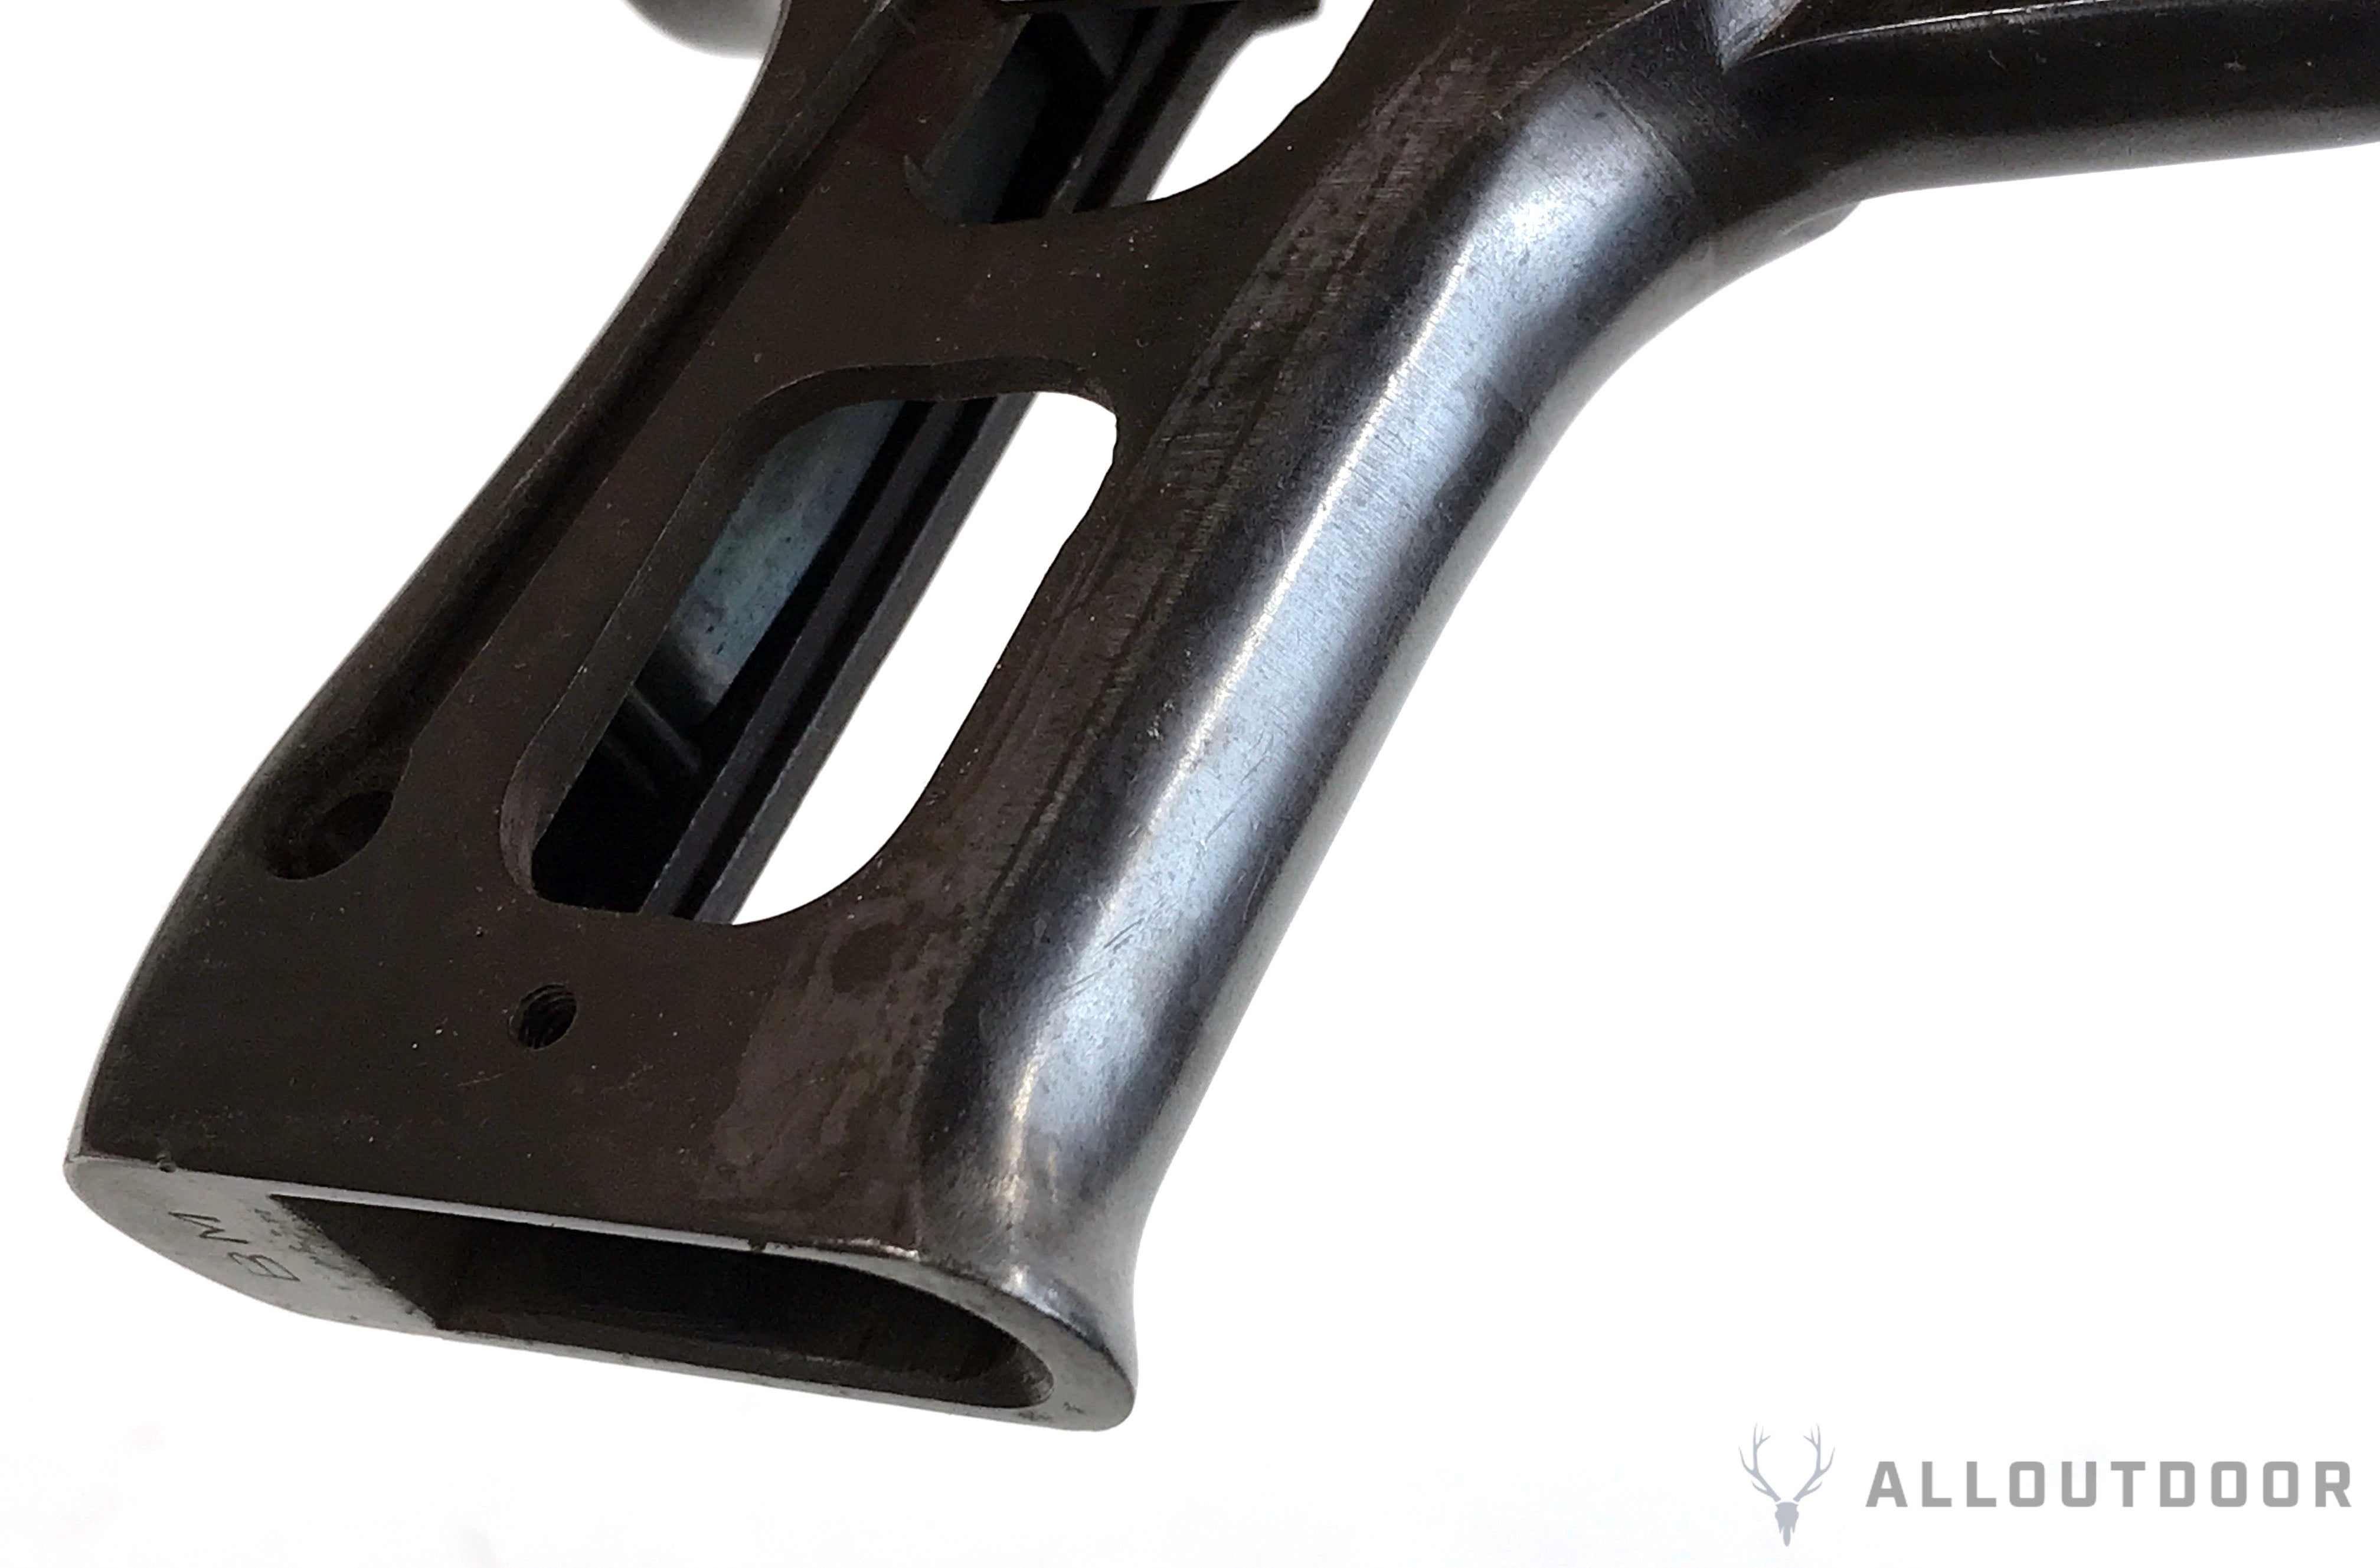 AllOutdoor Review: Talon Grips 1911 Modular Grip System